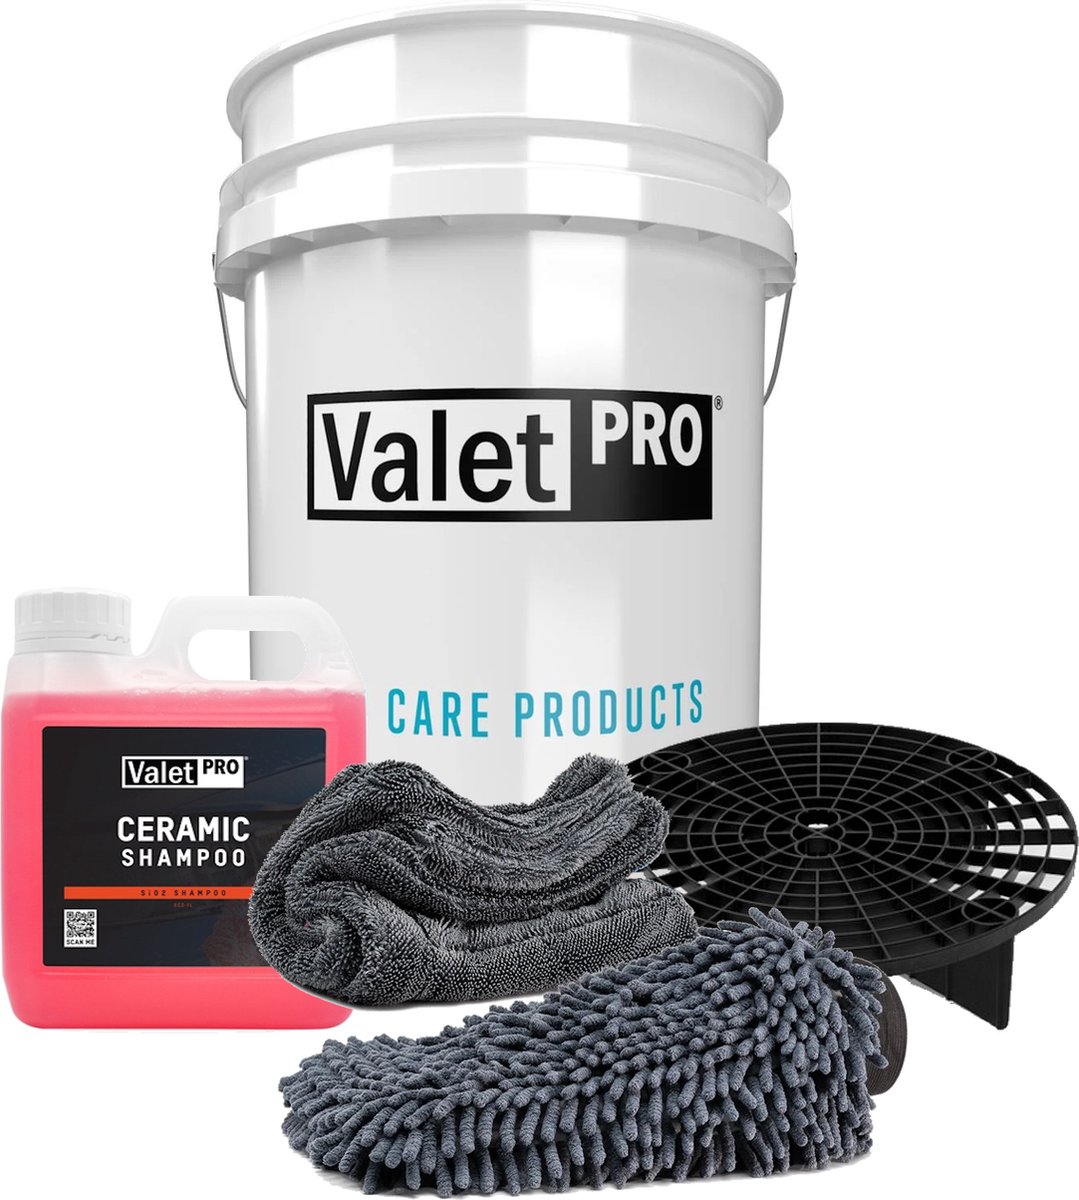 Nieuw! ValetPro Ceramic Shampoo set.